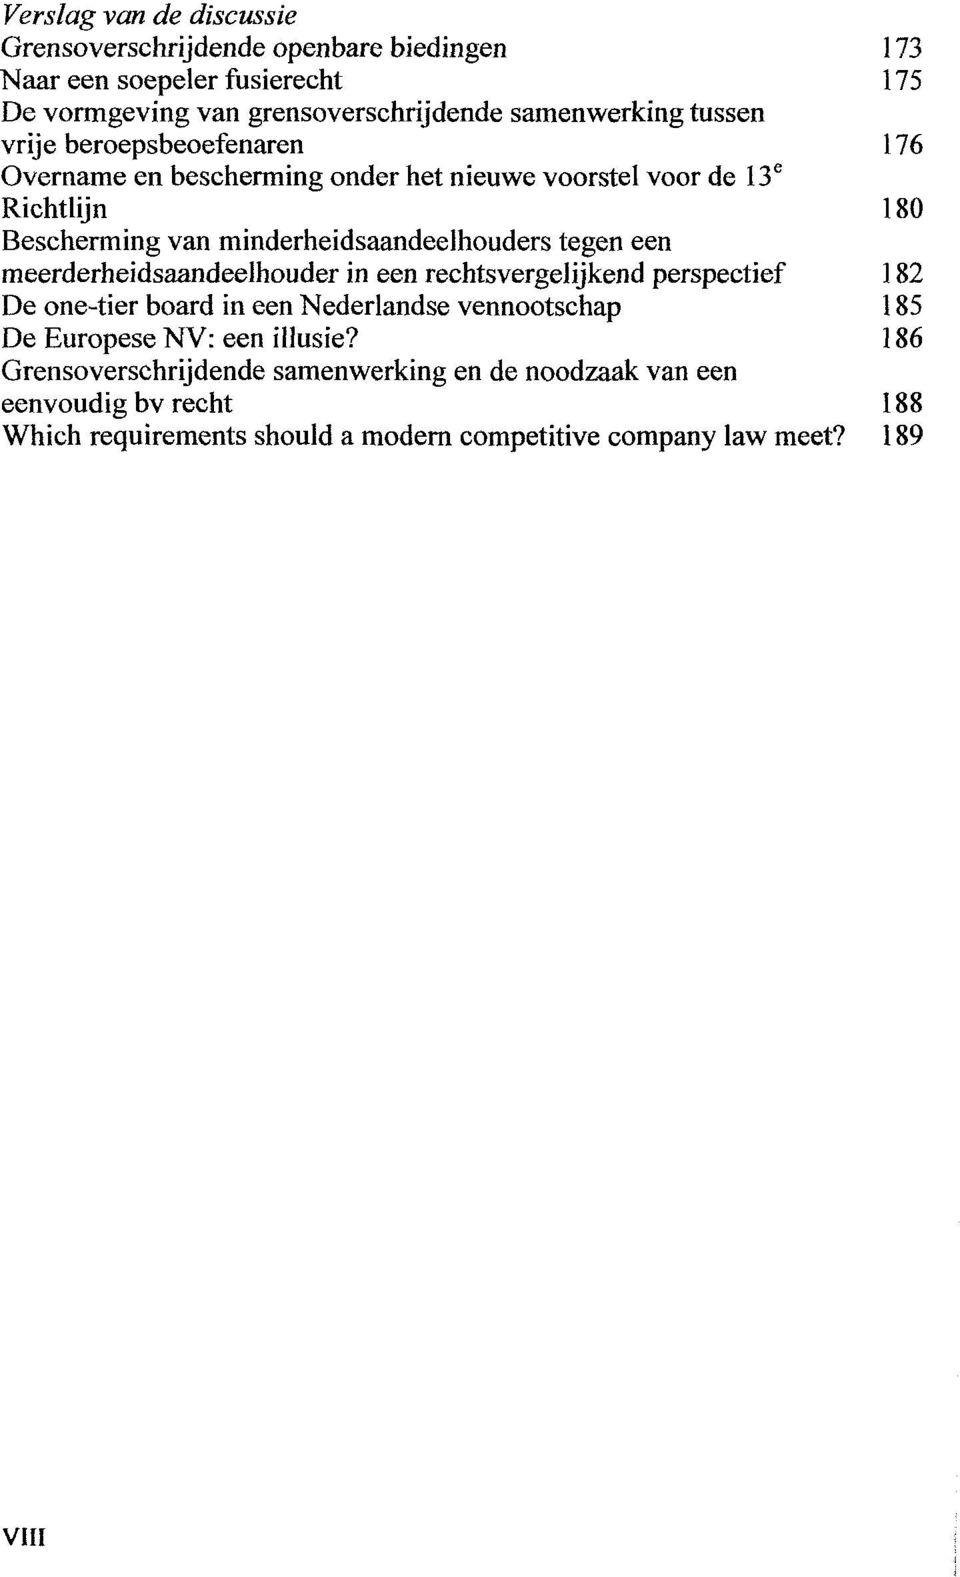 tegen een meerderheidsaandeelhouder in een rechtsvergelijkend perspectief 182 De one-tier board in een Nederlandse vennootschap 185 De Europese NV: een